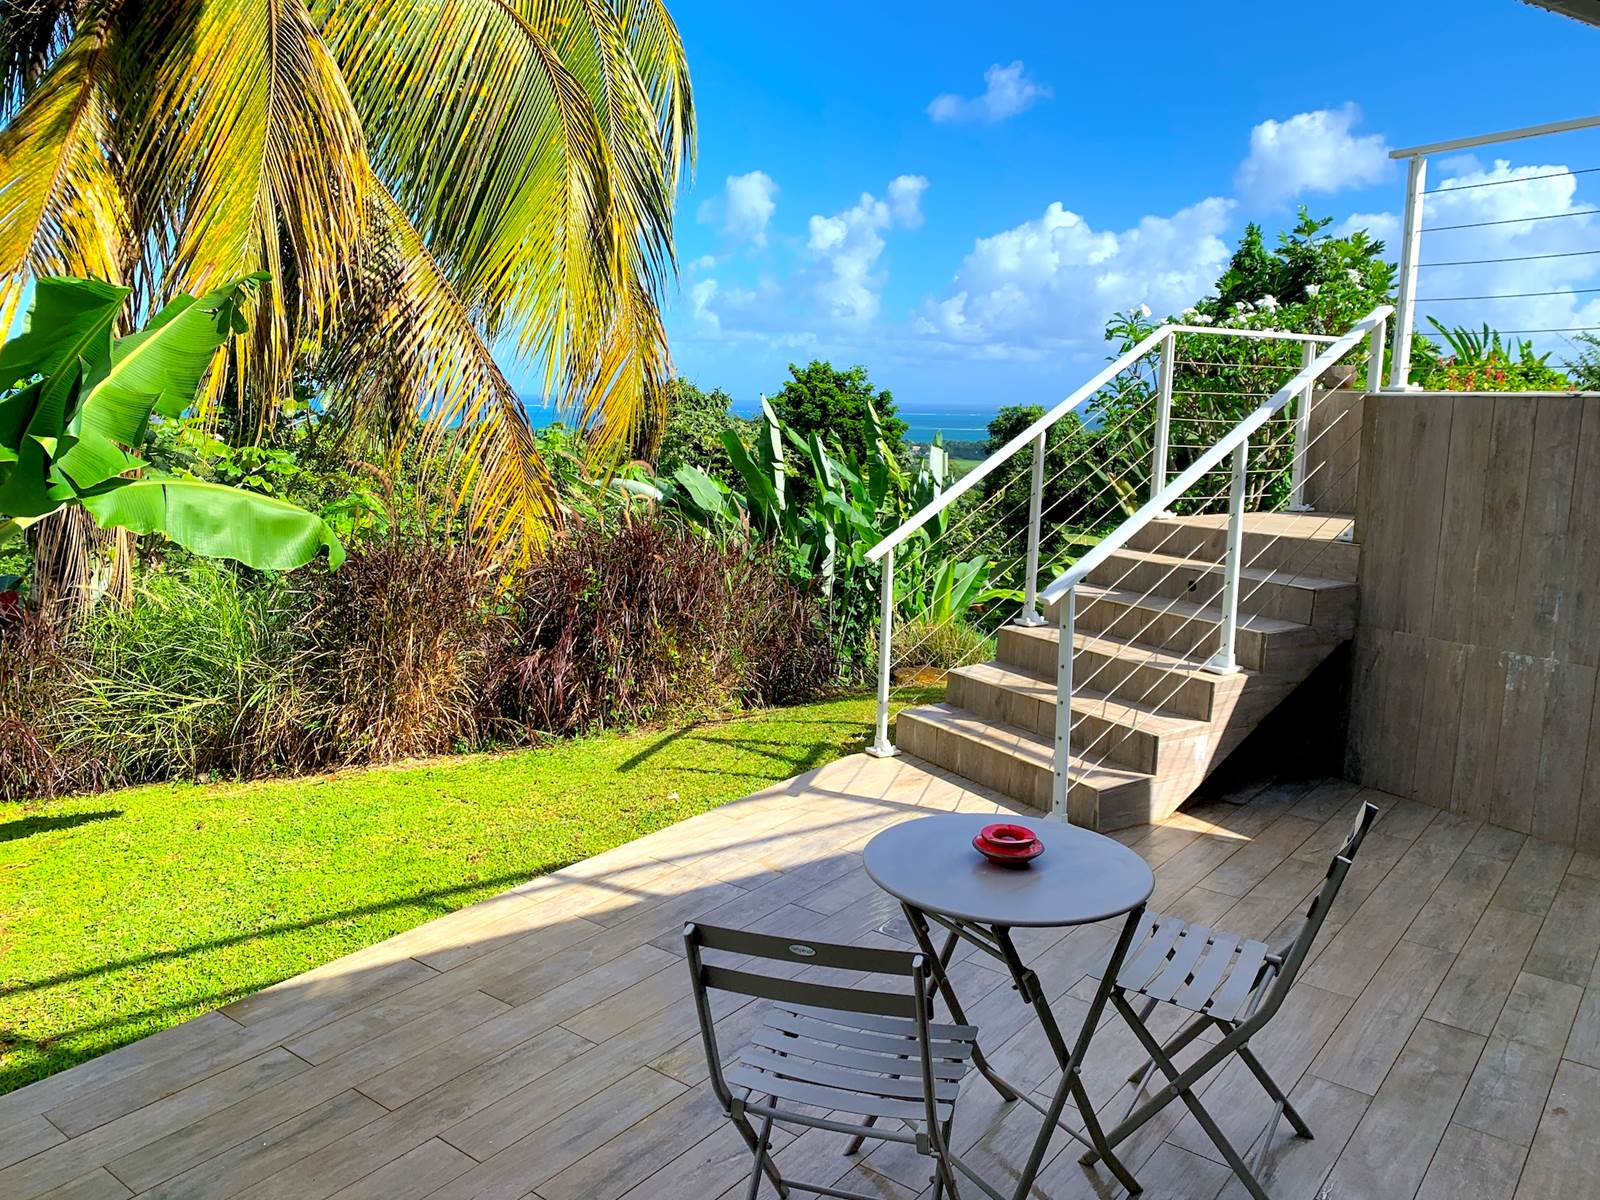 Terrasse privative avec vue mer et accès piscine par escalier